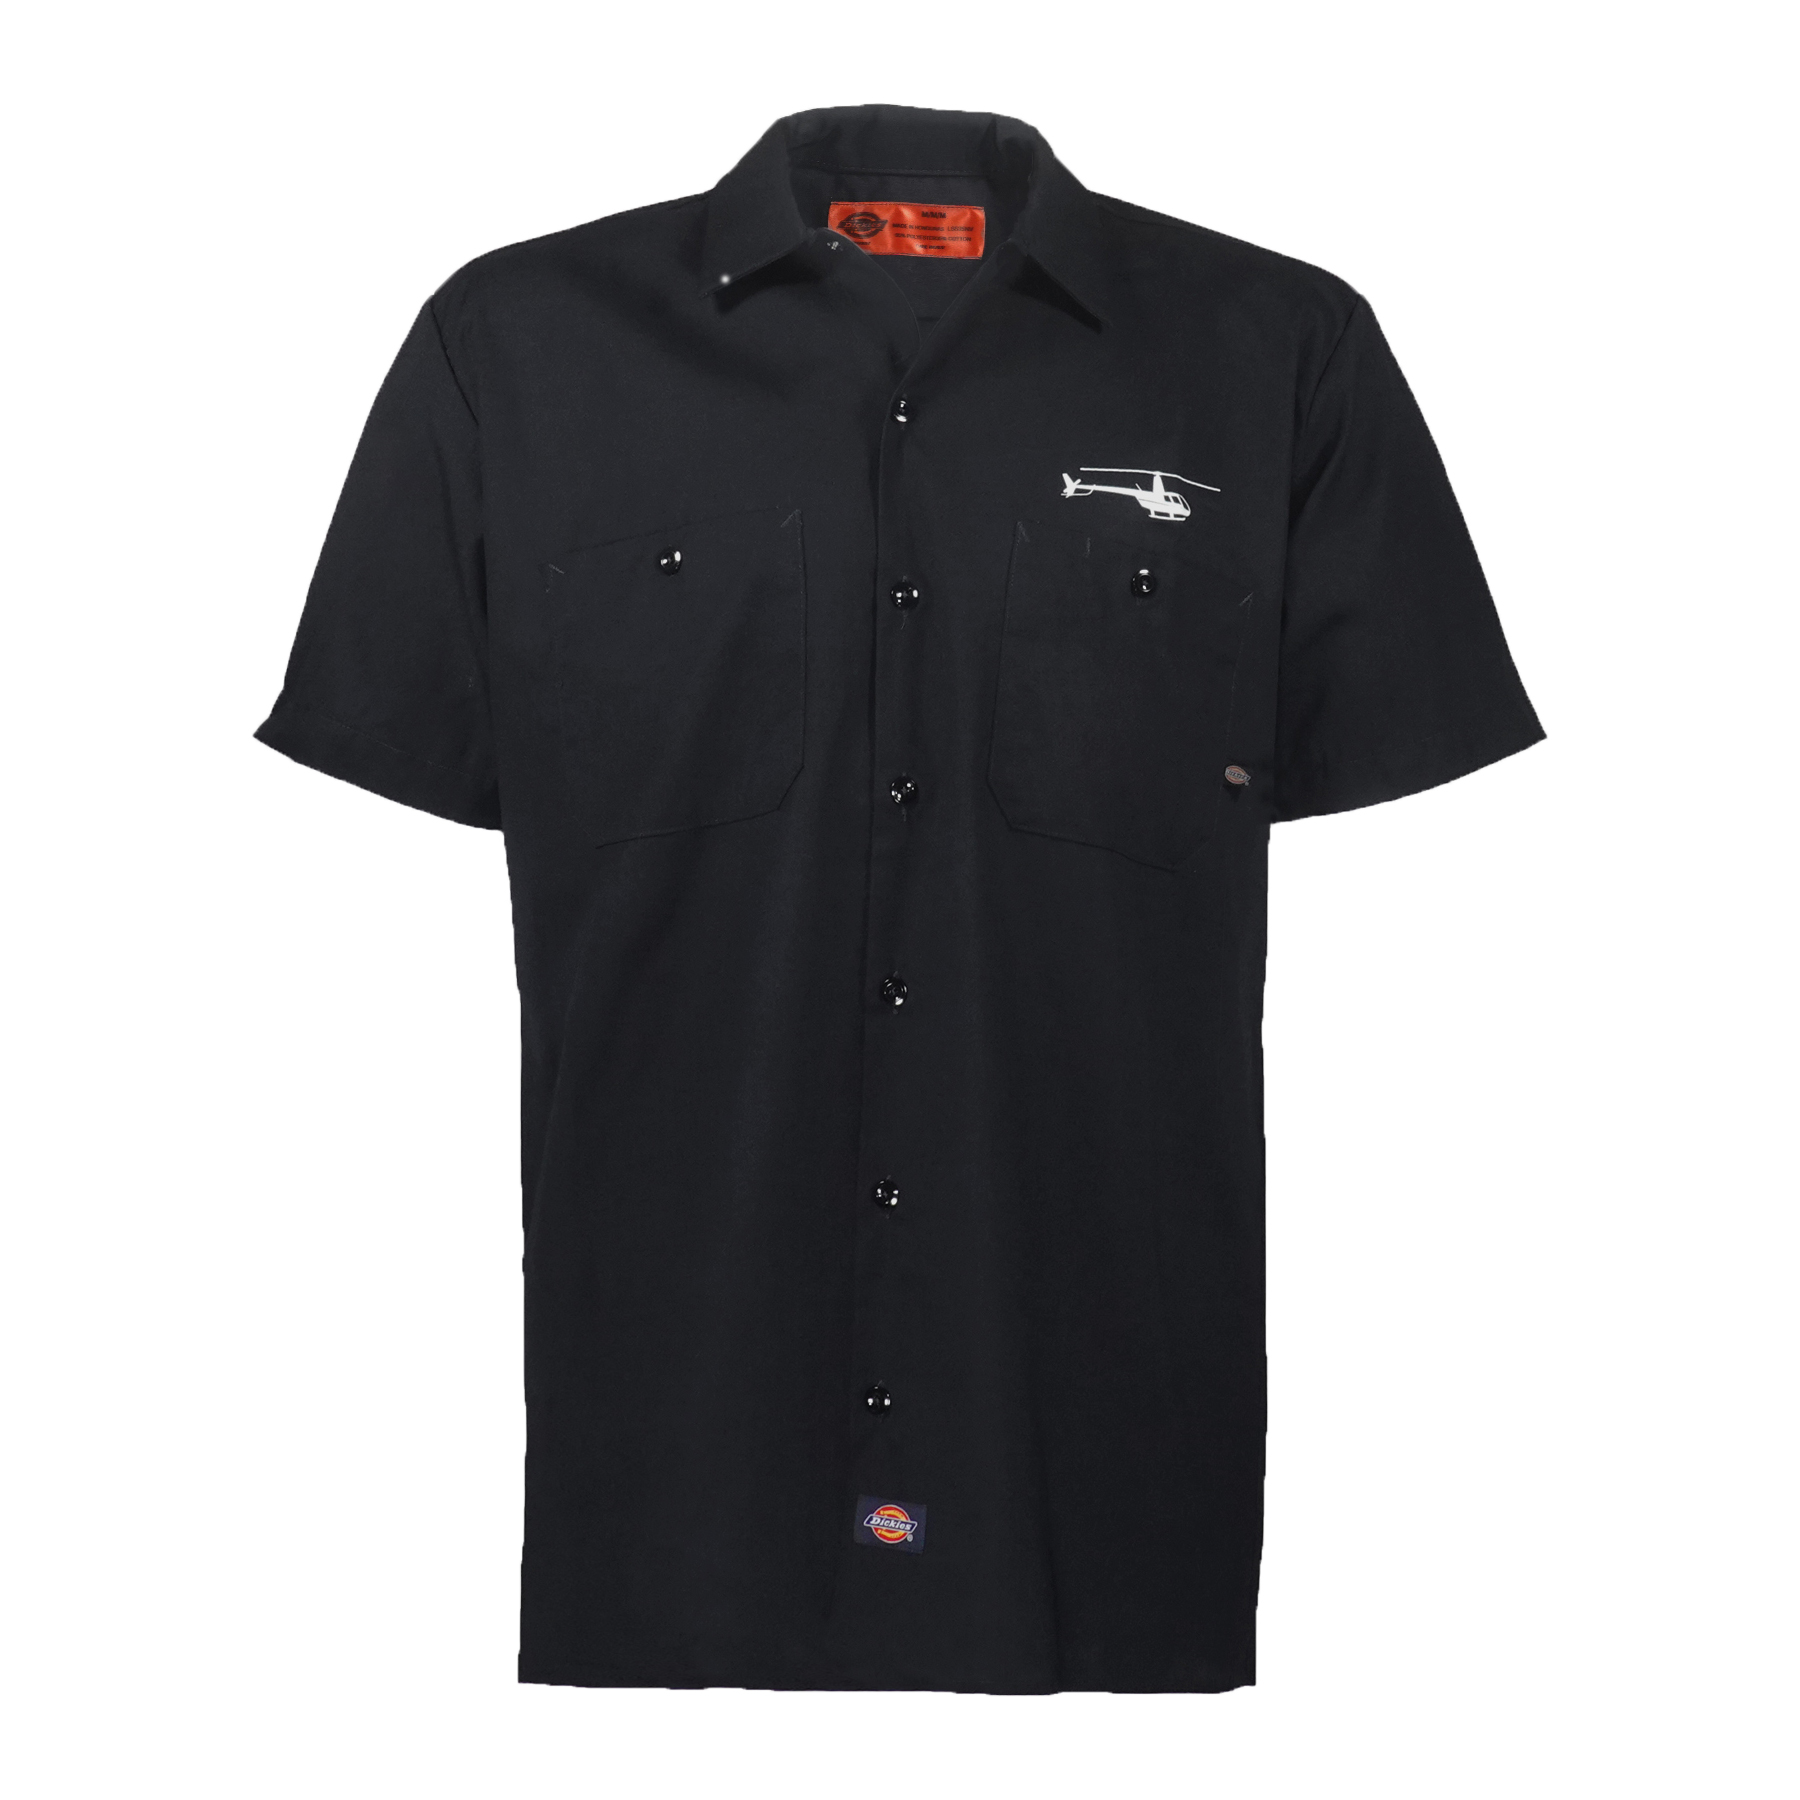 Dickies Work Shirt Black - Serie B Online Shop